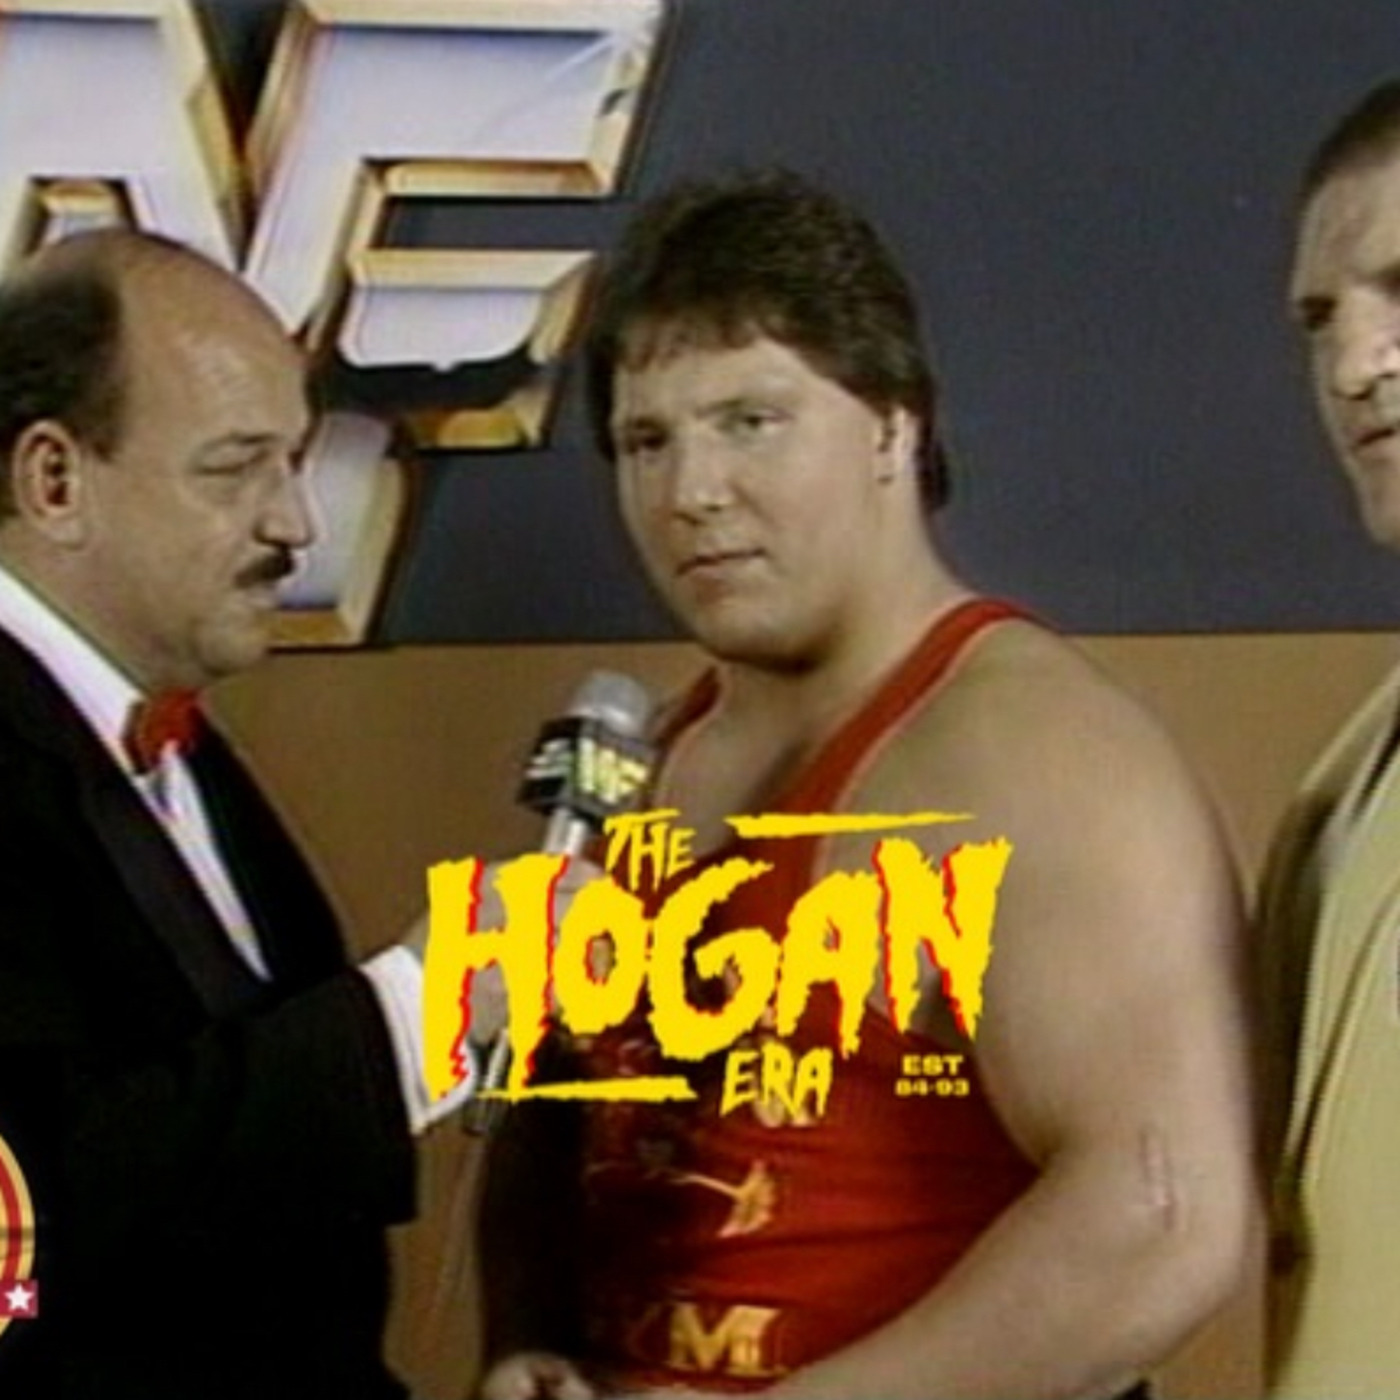 Episode 143: The Hogan Era - David Sammartino